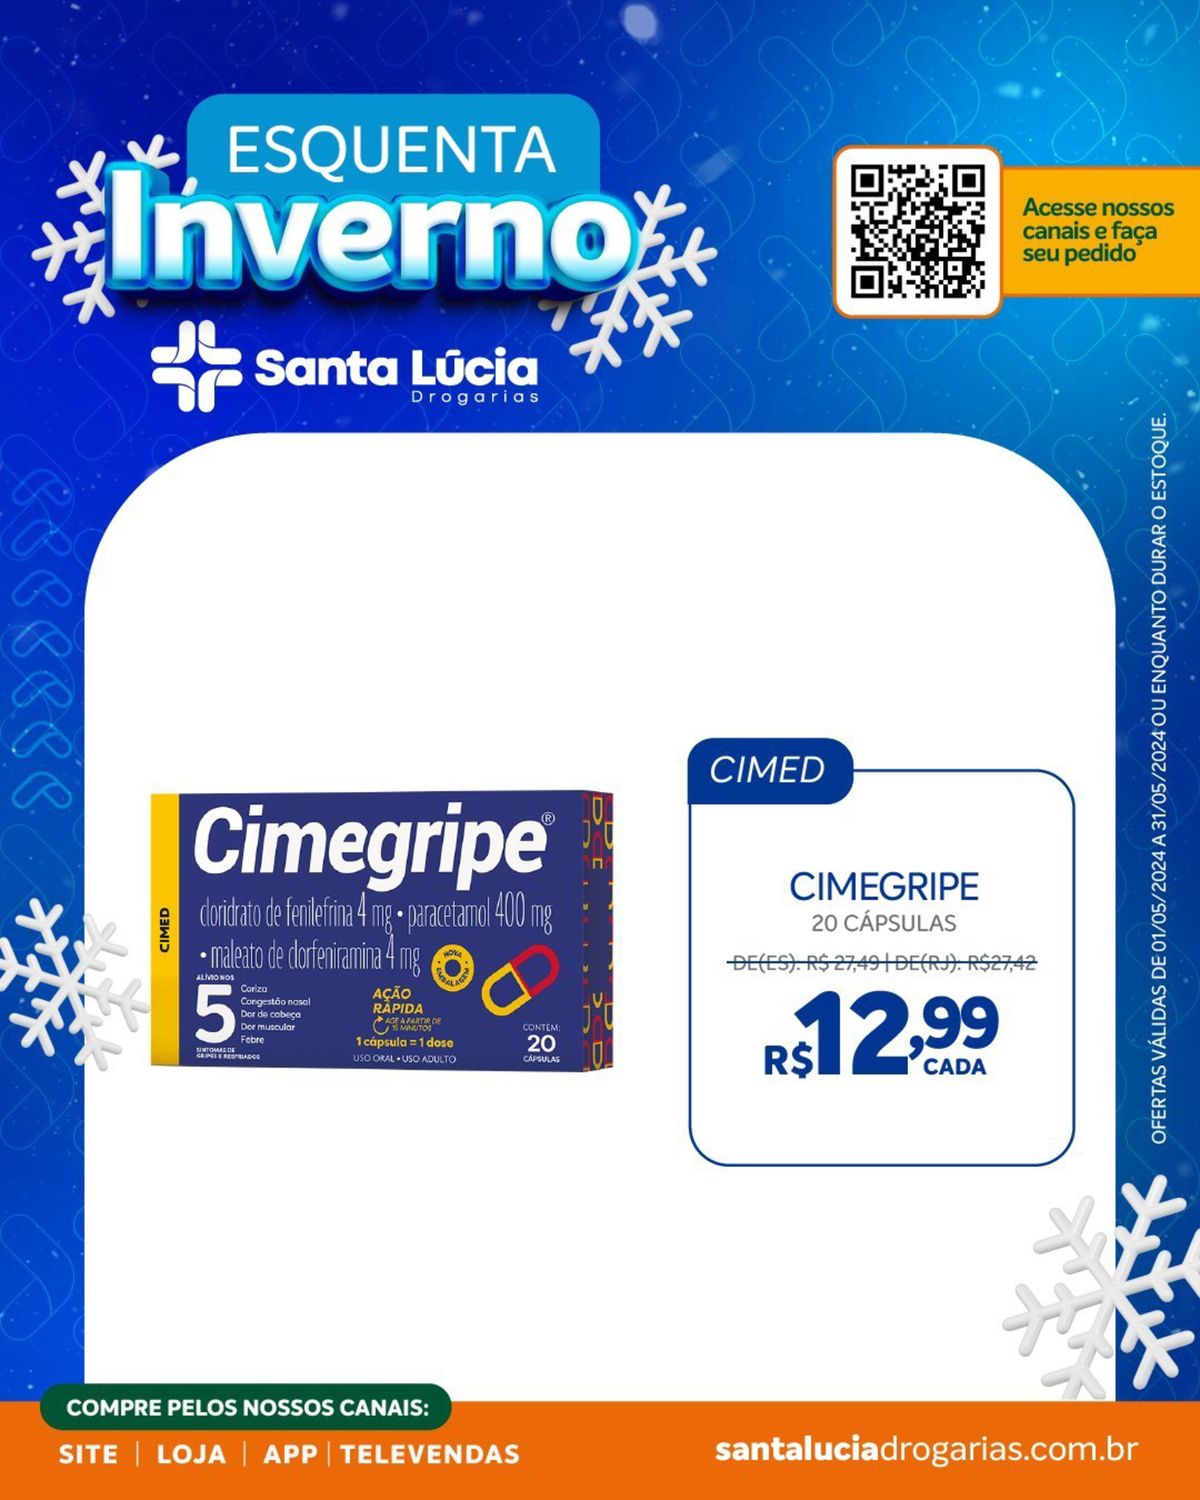 Cimegripe - 20 cápsulas por apenas R$ 2,99